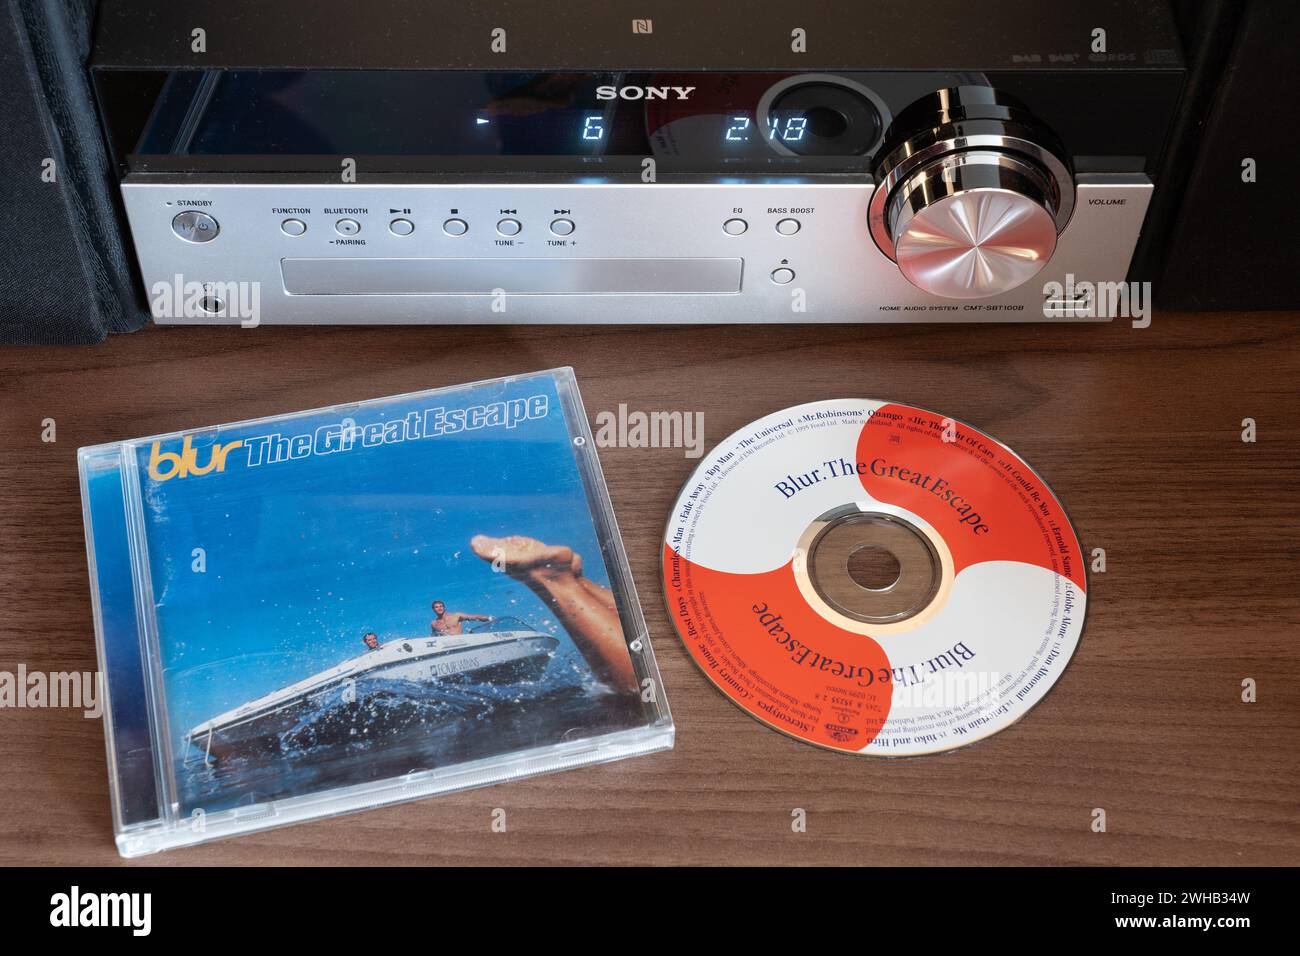 The Great Escape ist das vierte Studioalbum der britischen Rockband Blur. Das Album erreichte Platz eins in den UK Albums Charts. CD-Album hier zu sehen Stockfoto